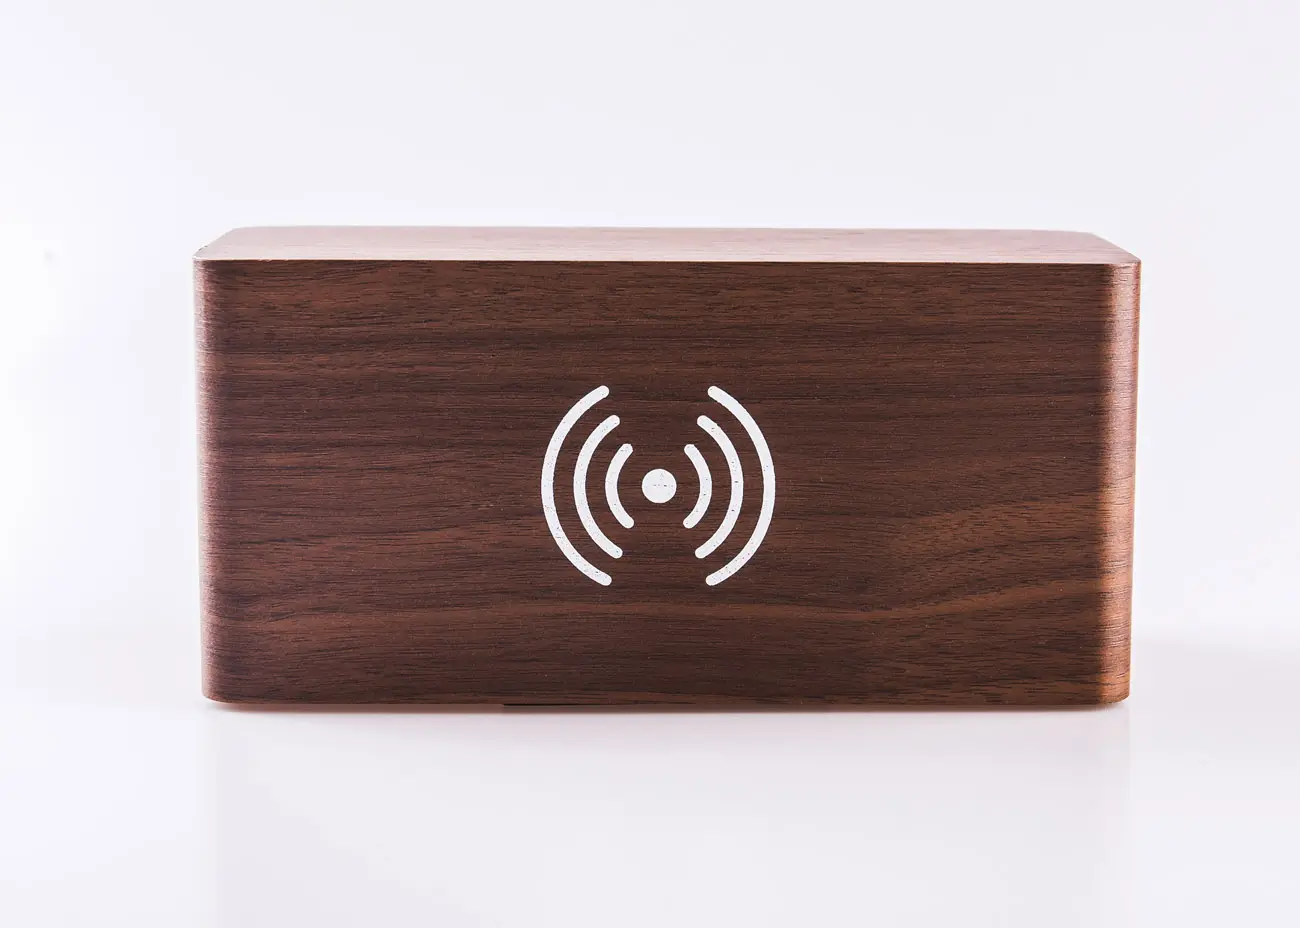 इलेक्ट्रॉनिक ध्वनि नियंत्रण वायरलेस चार्जिंग स्मार्ट एलईडी डिजिटल लकड़ी के बांस घड़ी अलार्म कैलेंडर समय लकड़ी वायरलेस चार्जर